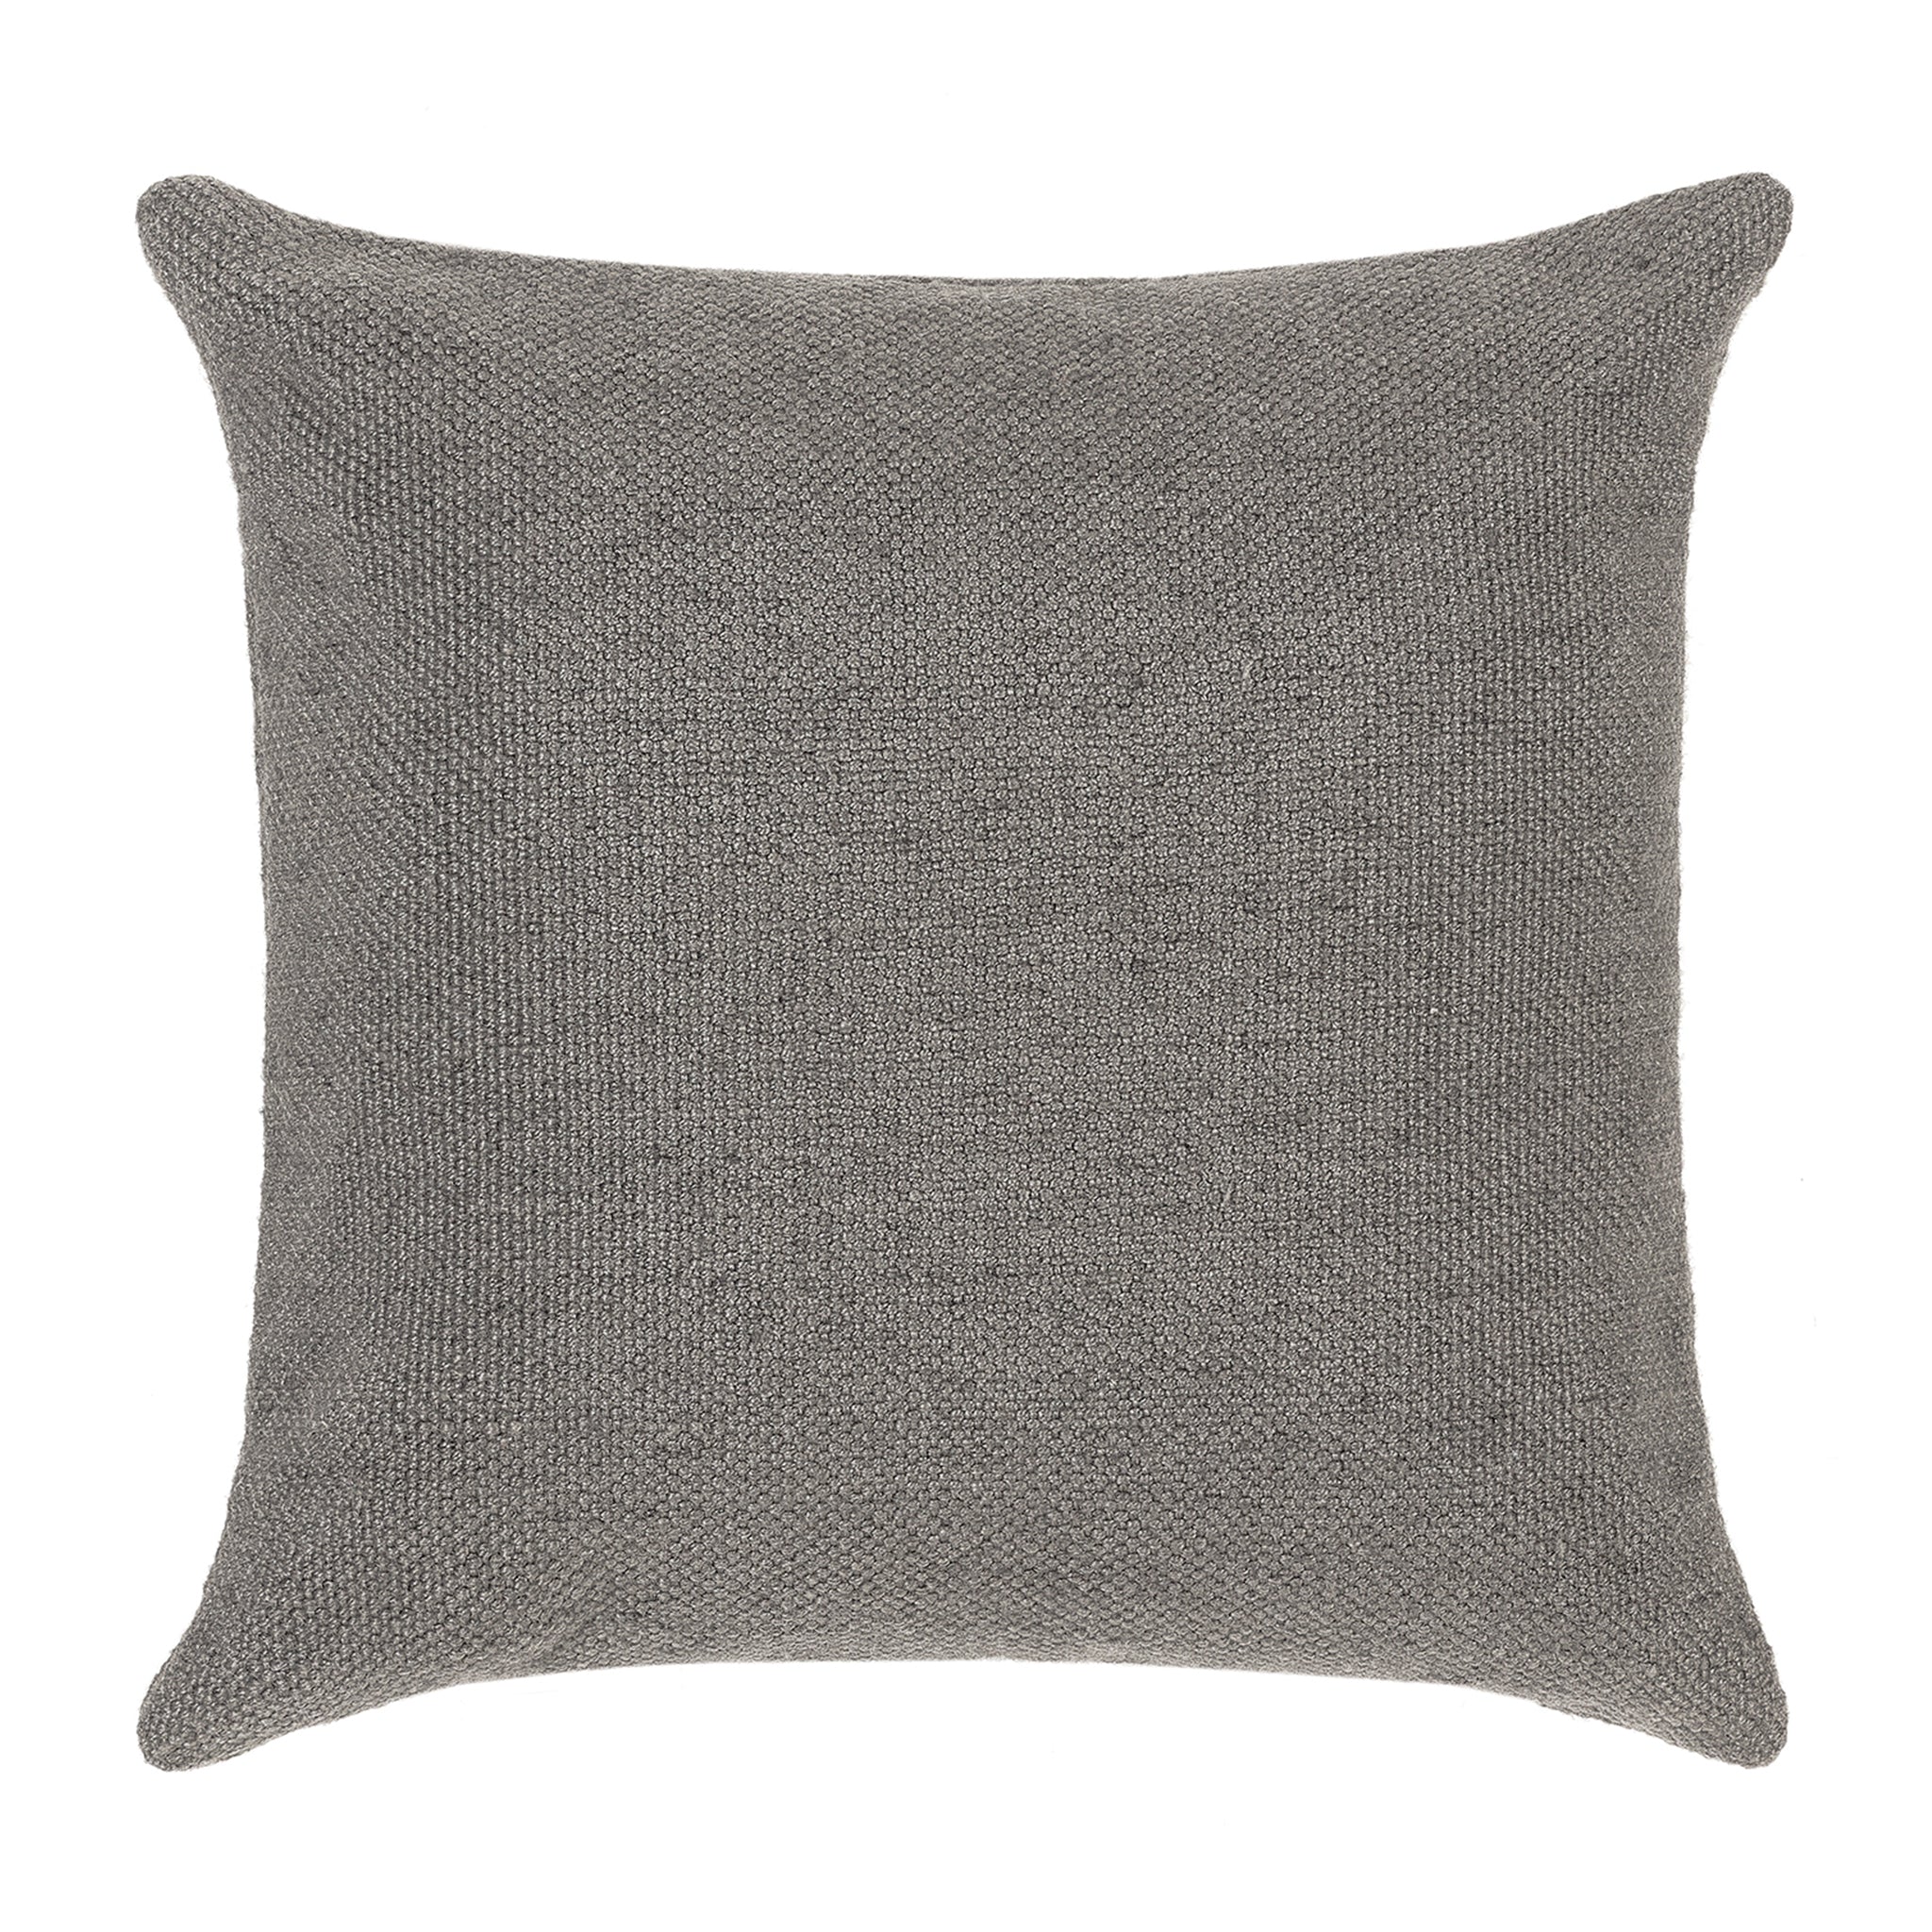 Warm grey plain cushion